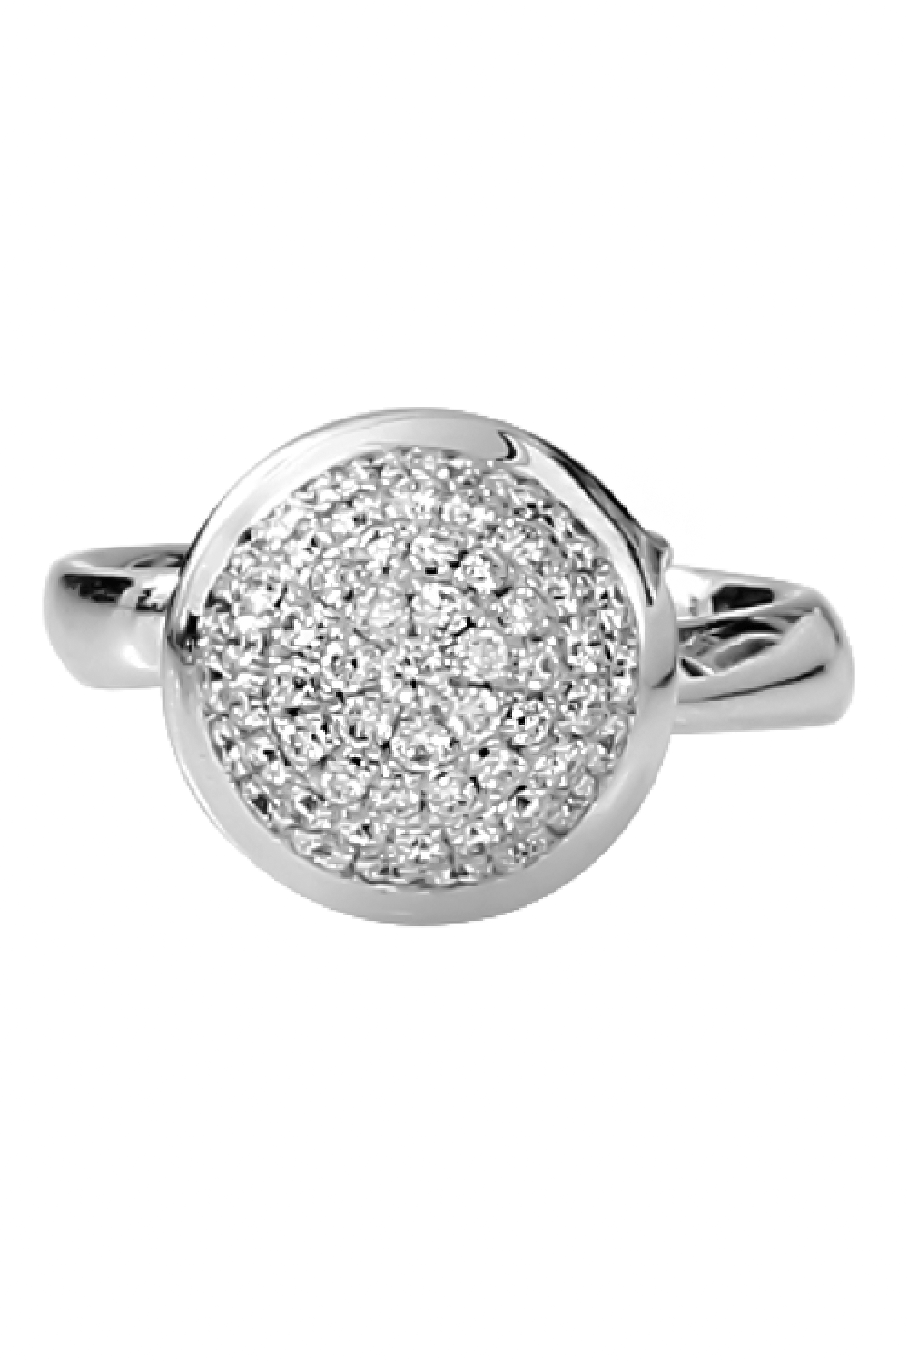 TAMARA COMOLLI-Large Diamond Pave Bouton Ring-WHITE GOLD